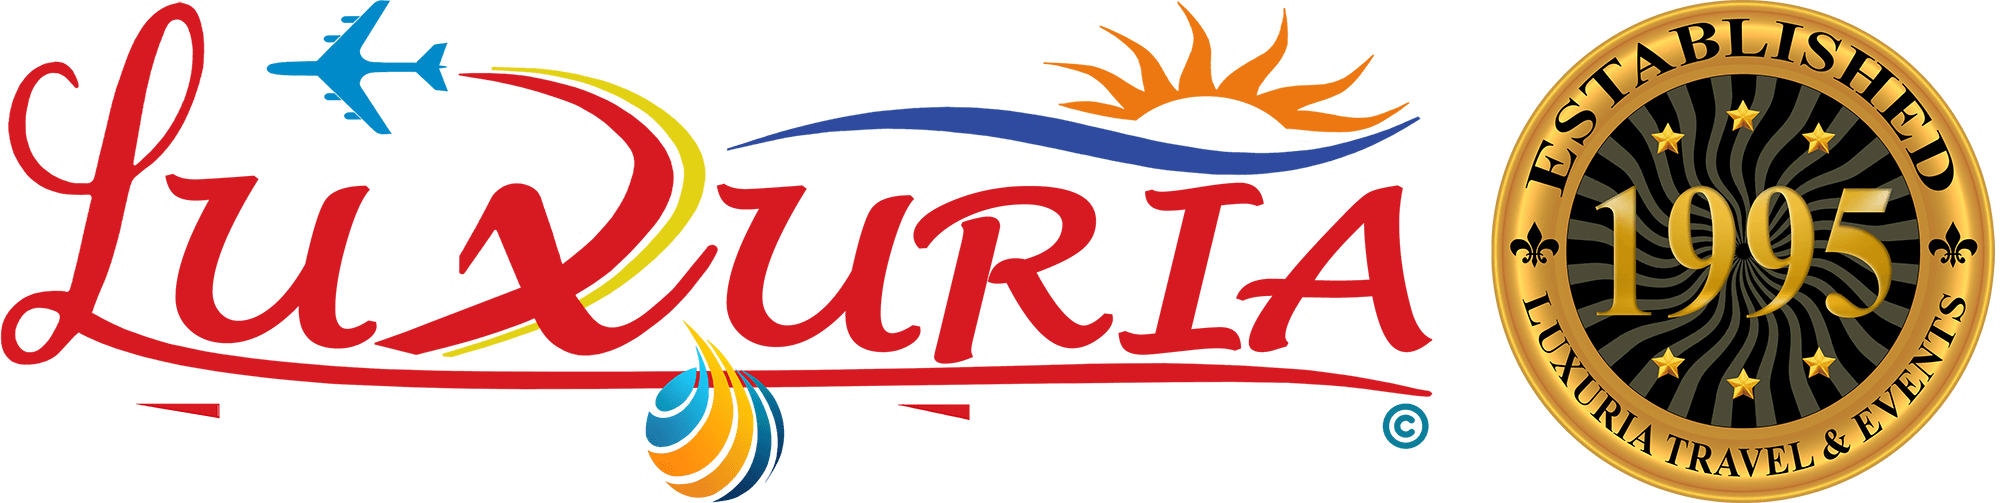 Luxuria Travel & Events | أميركا ترفع الحظر عن الأجهزة الإلكترونية عن شركات الطيران الخليجية ⋆ Luxuria Travel & Events